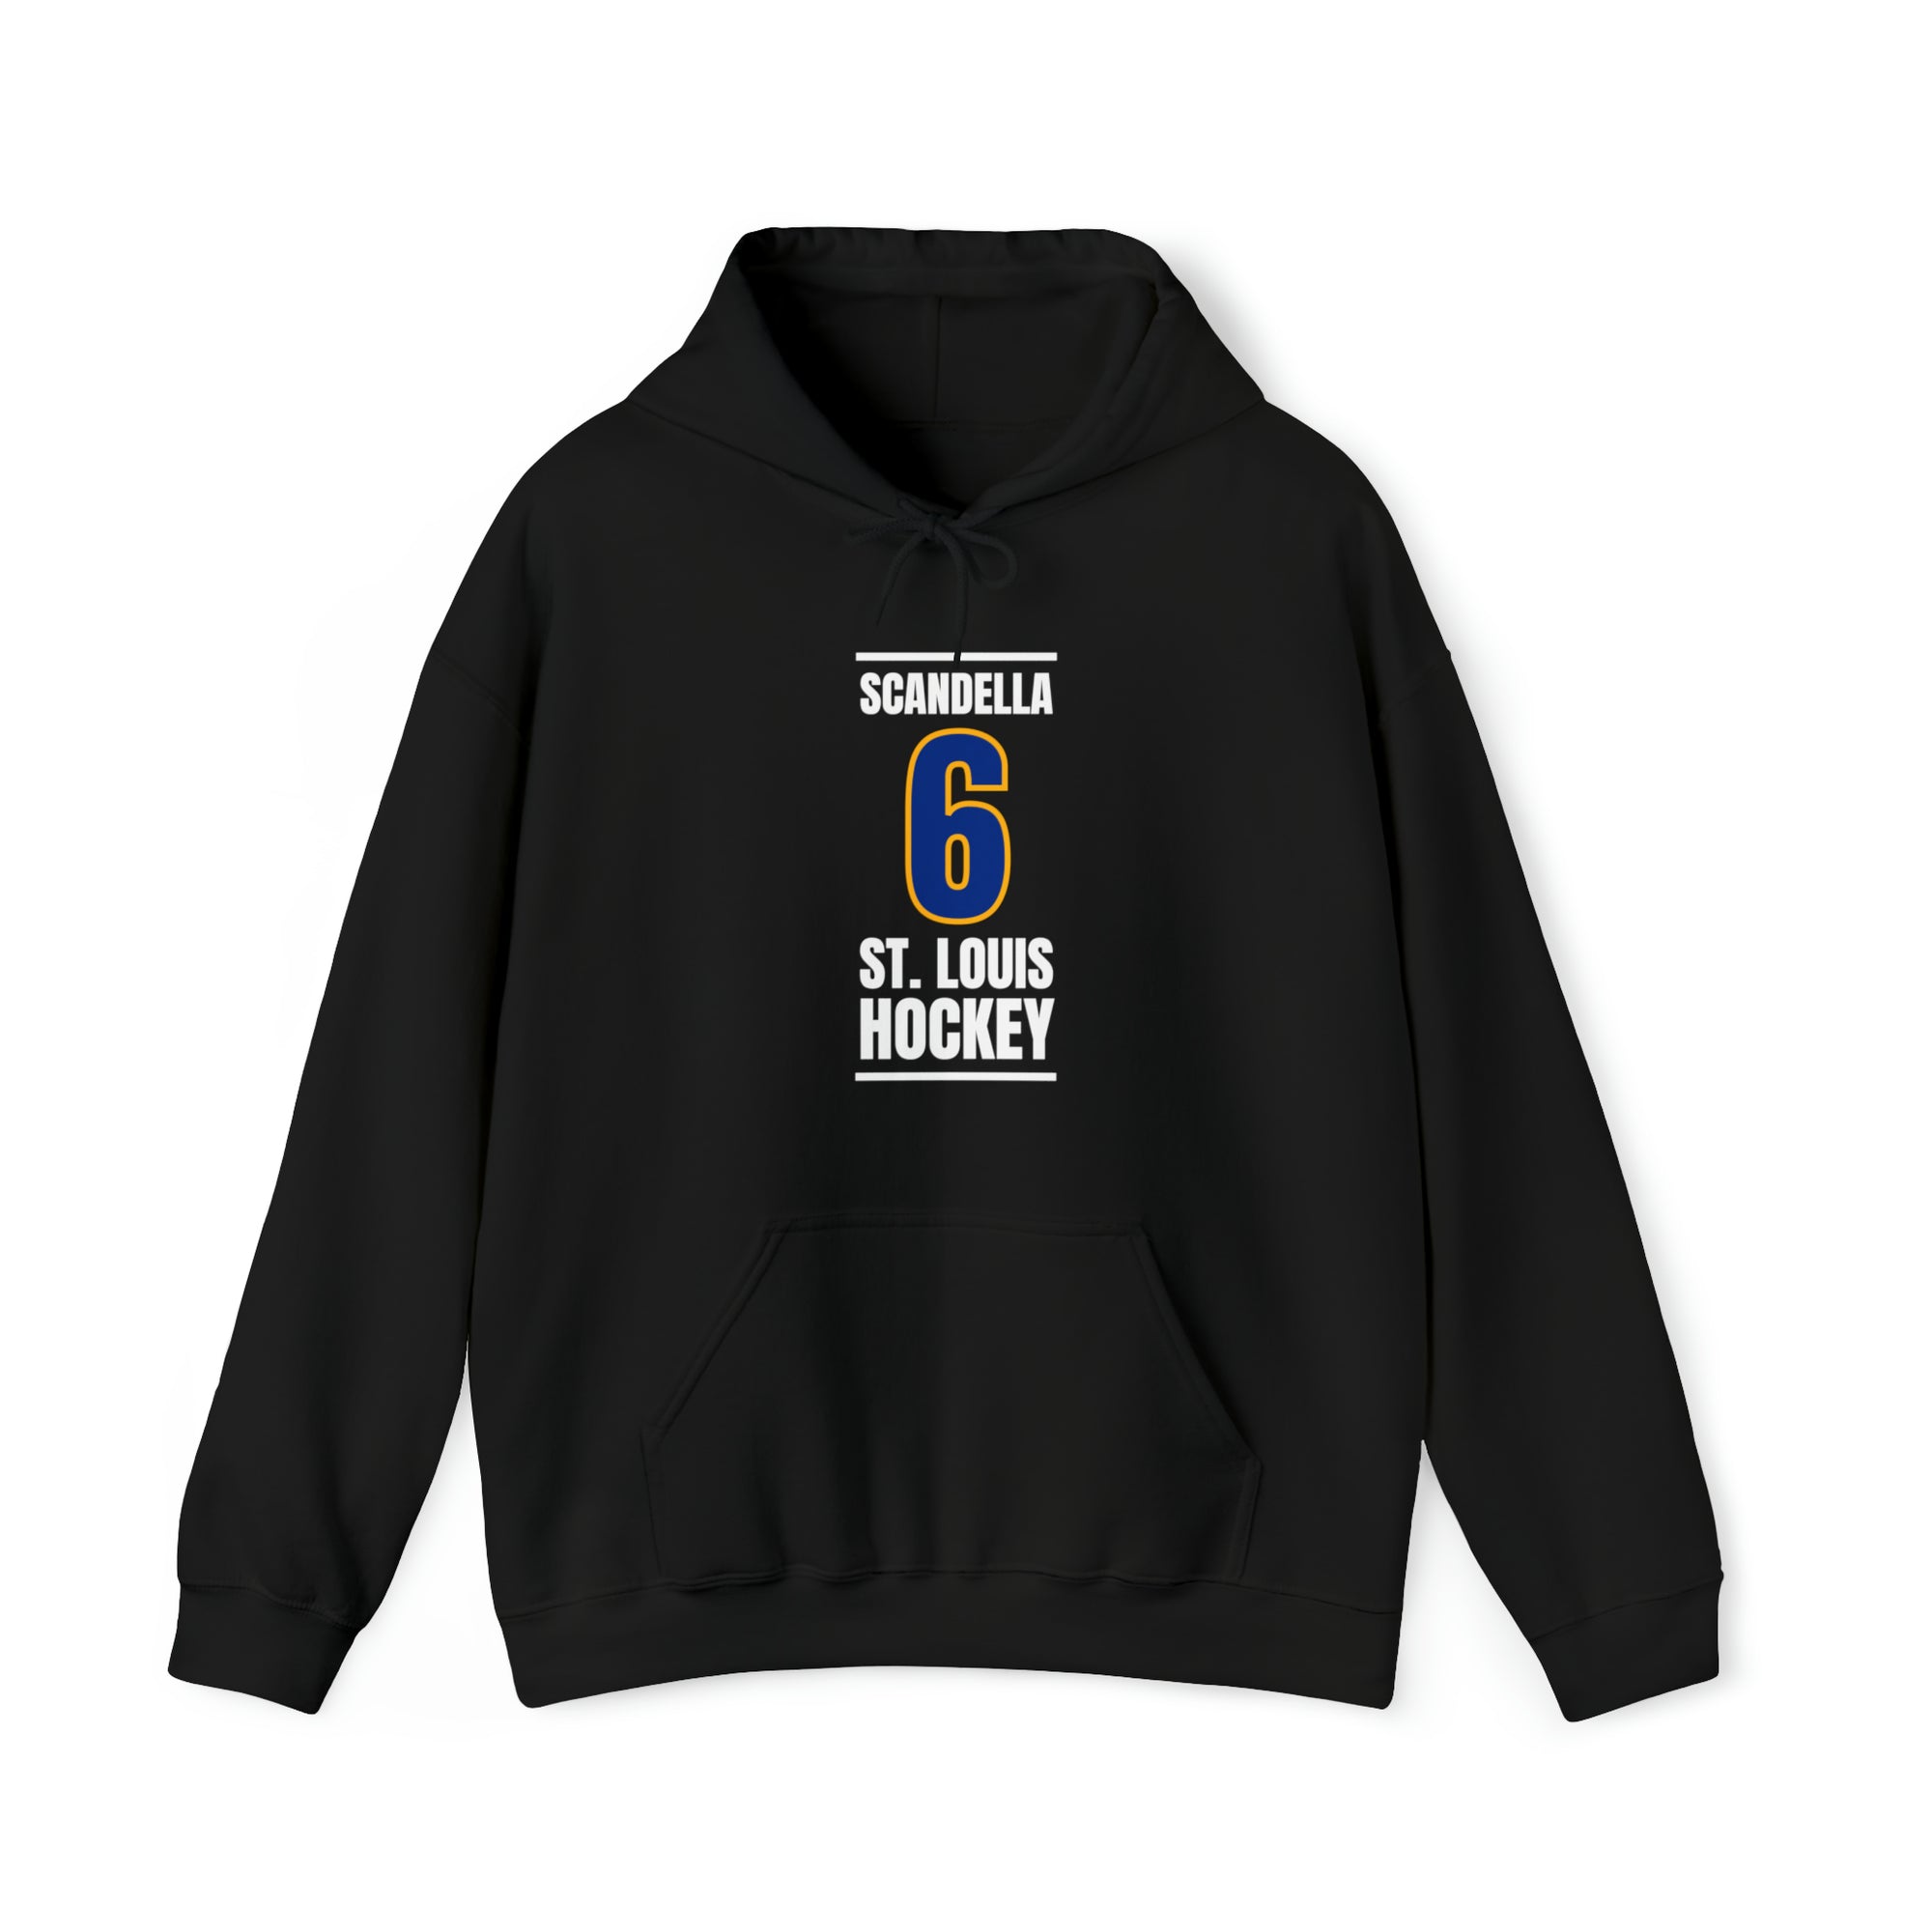 Scandella 6 St. Louis Hockey Blue Vertical Design Unisex Hooded Sweatshirt